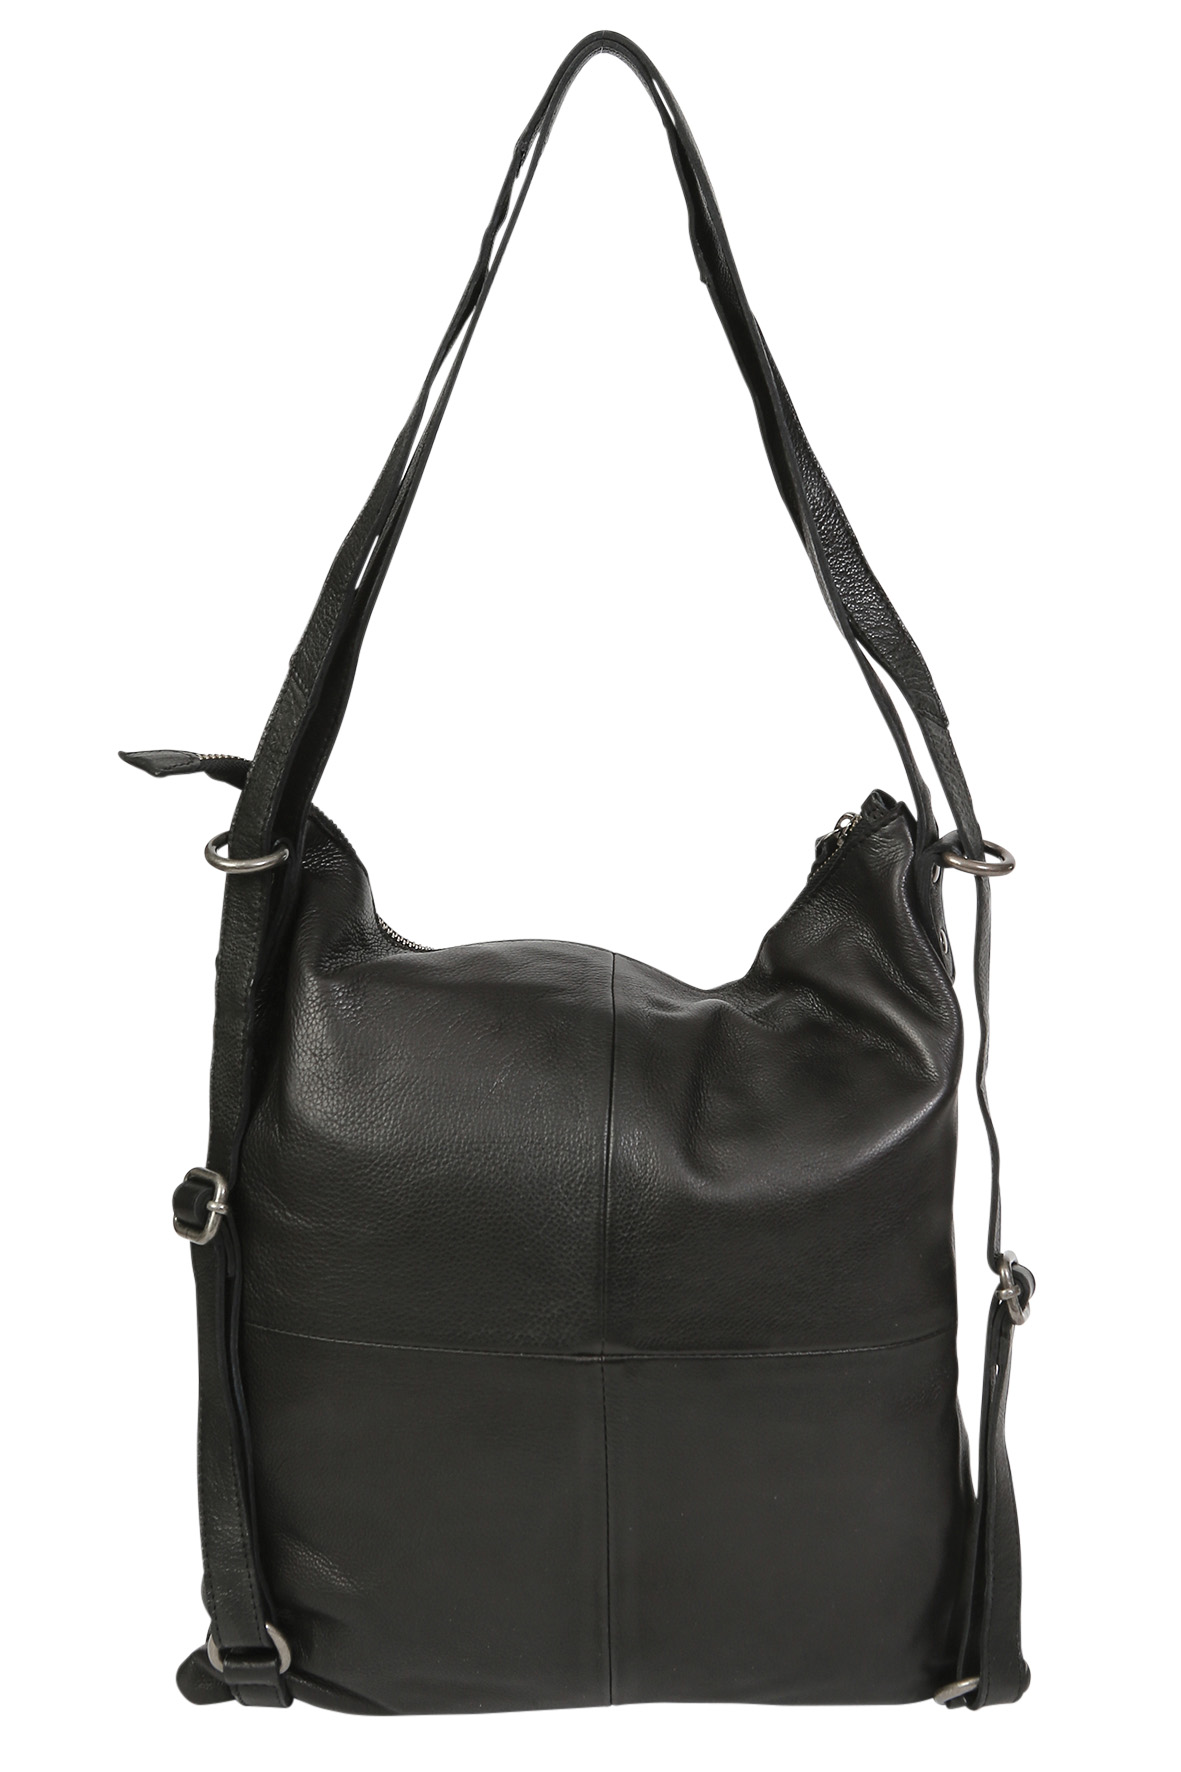 Leather Hobo/Shoulder/Backpack 6314 Black - Modapelle Direct